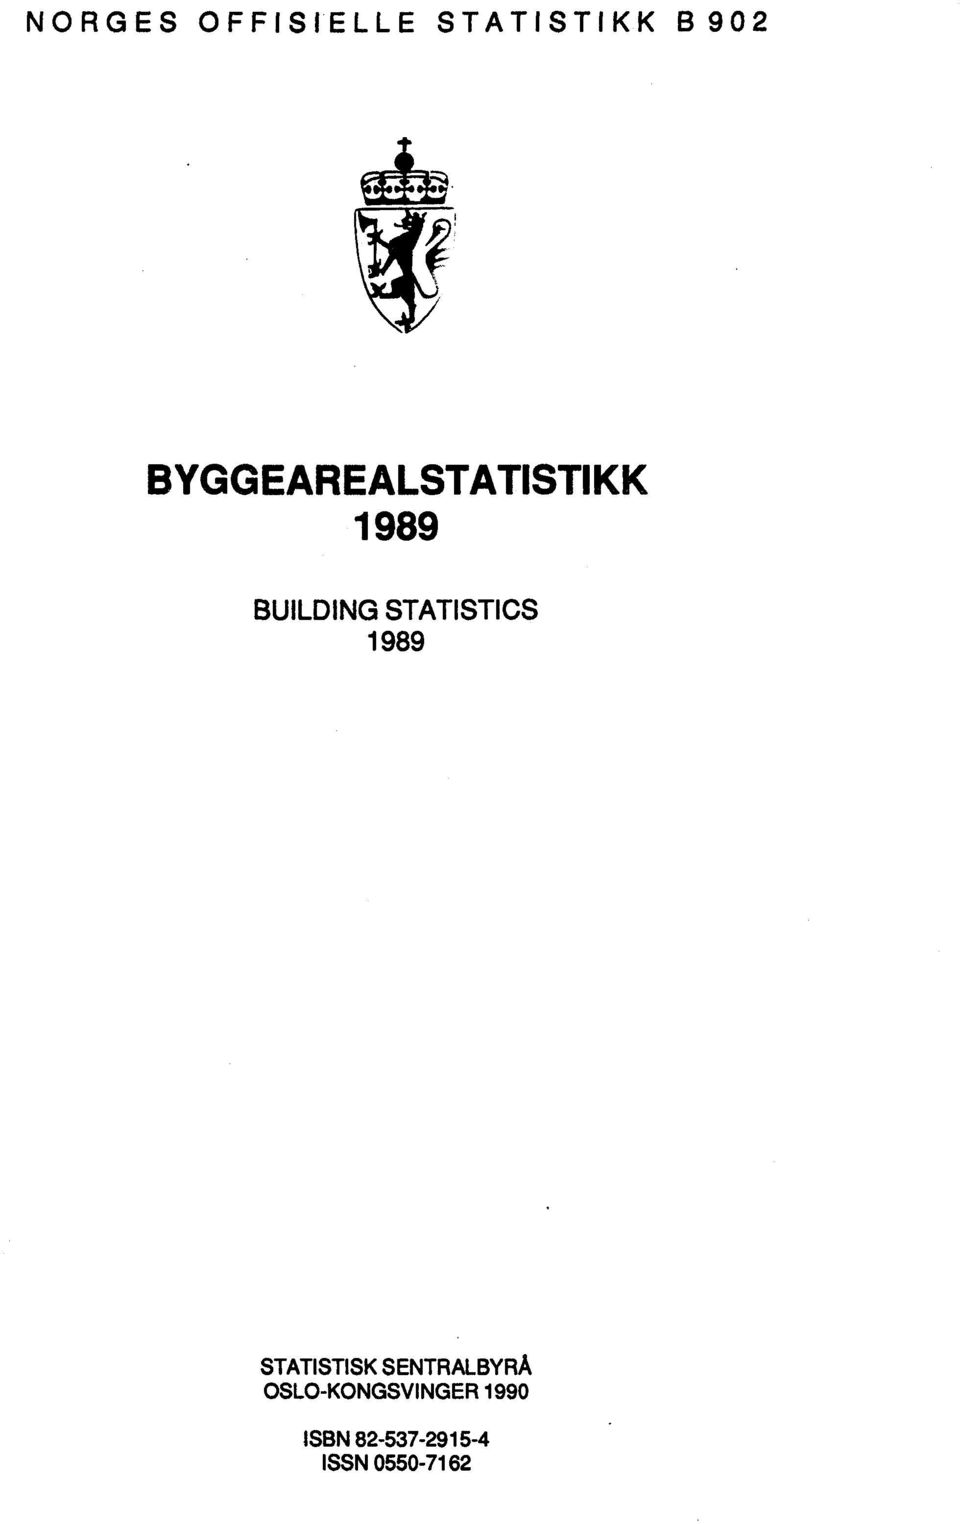 STATISTICS 1989 STATISTISK SENTRALBYRÅ